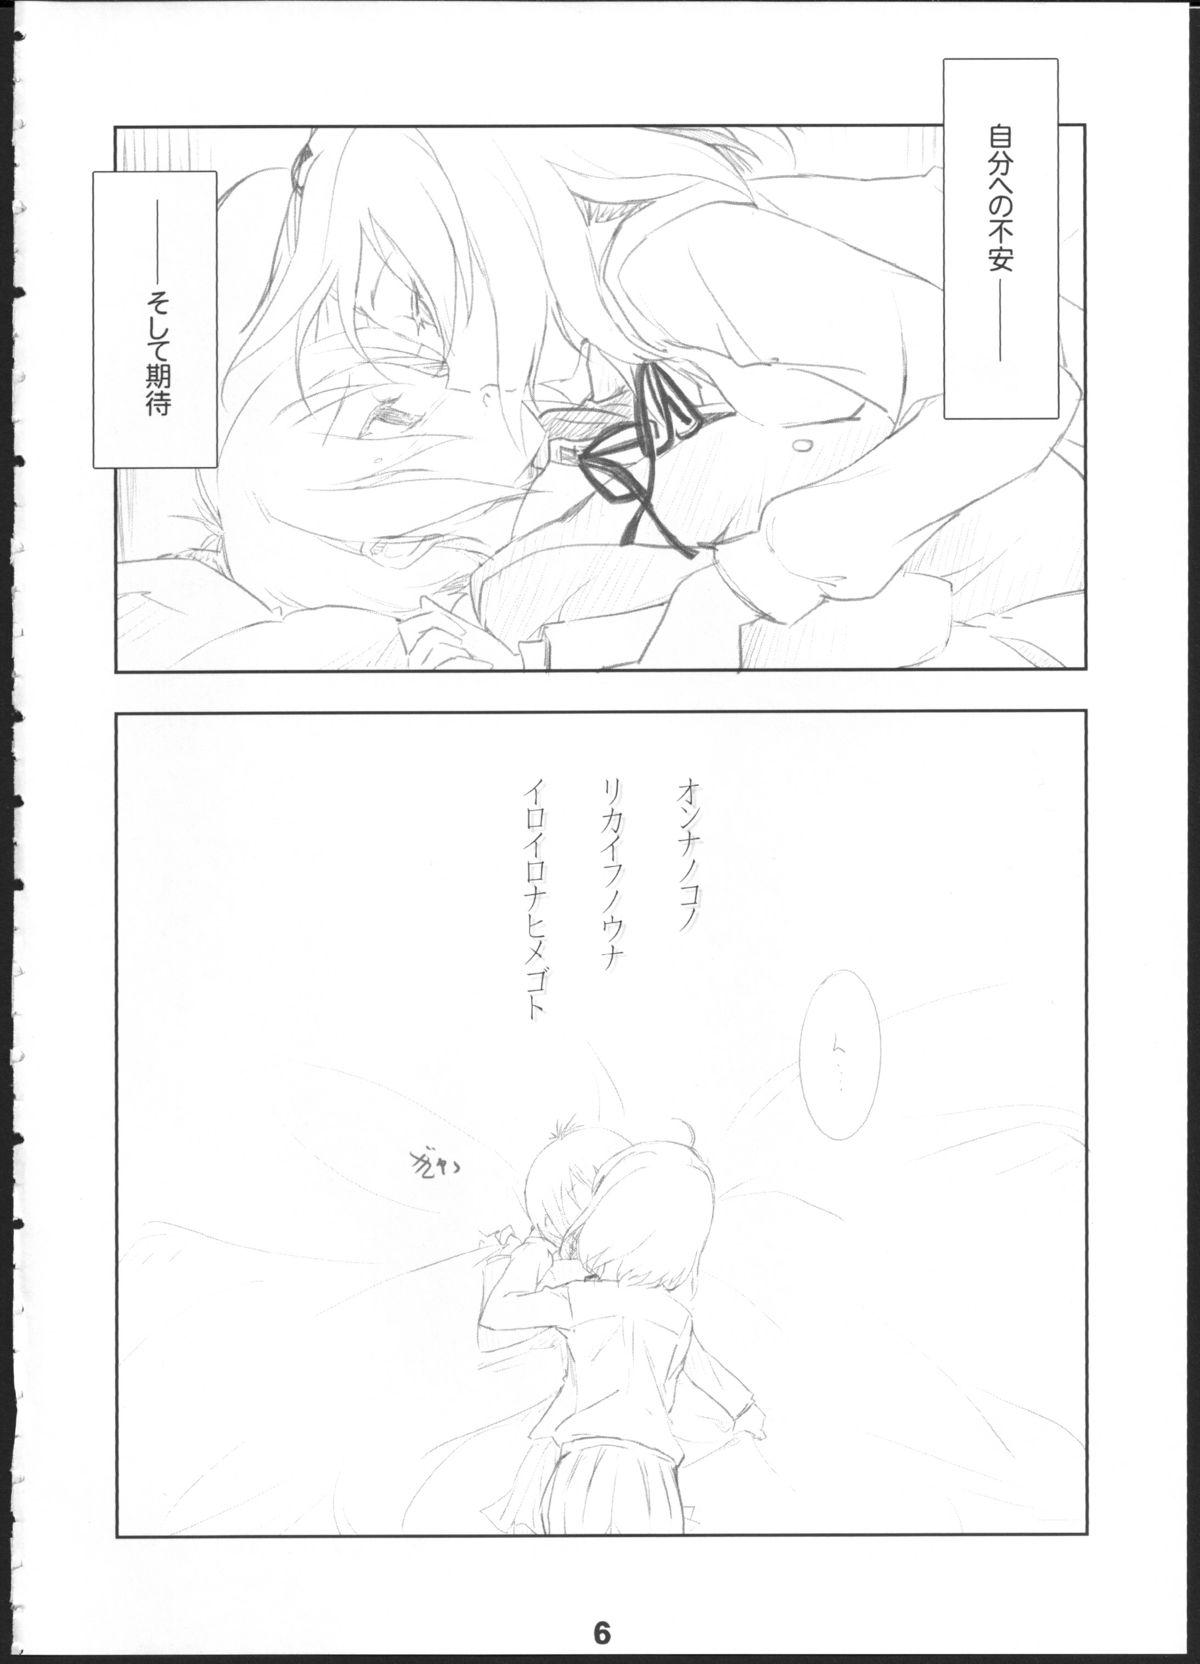 Riding Q: Uniuni Shiteru? A: Warito Shiteru. - A channel Piroca - Page 5